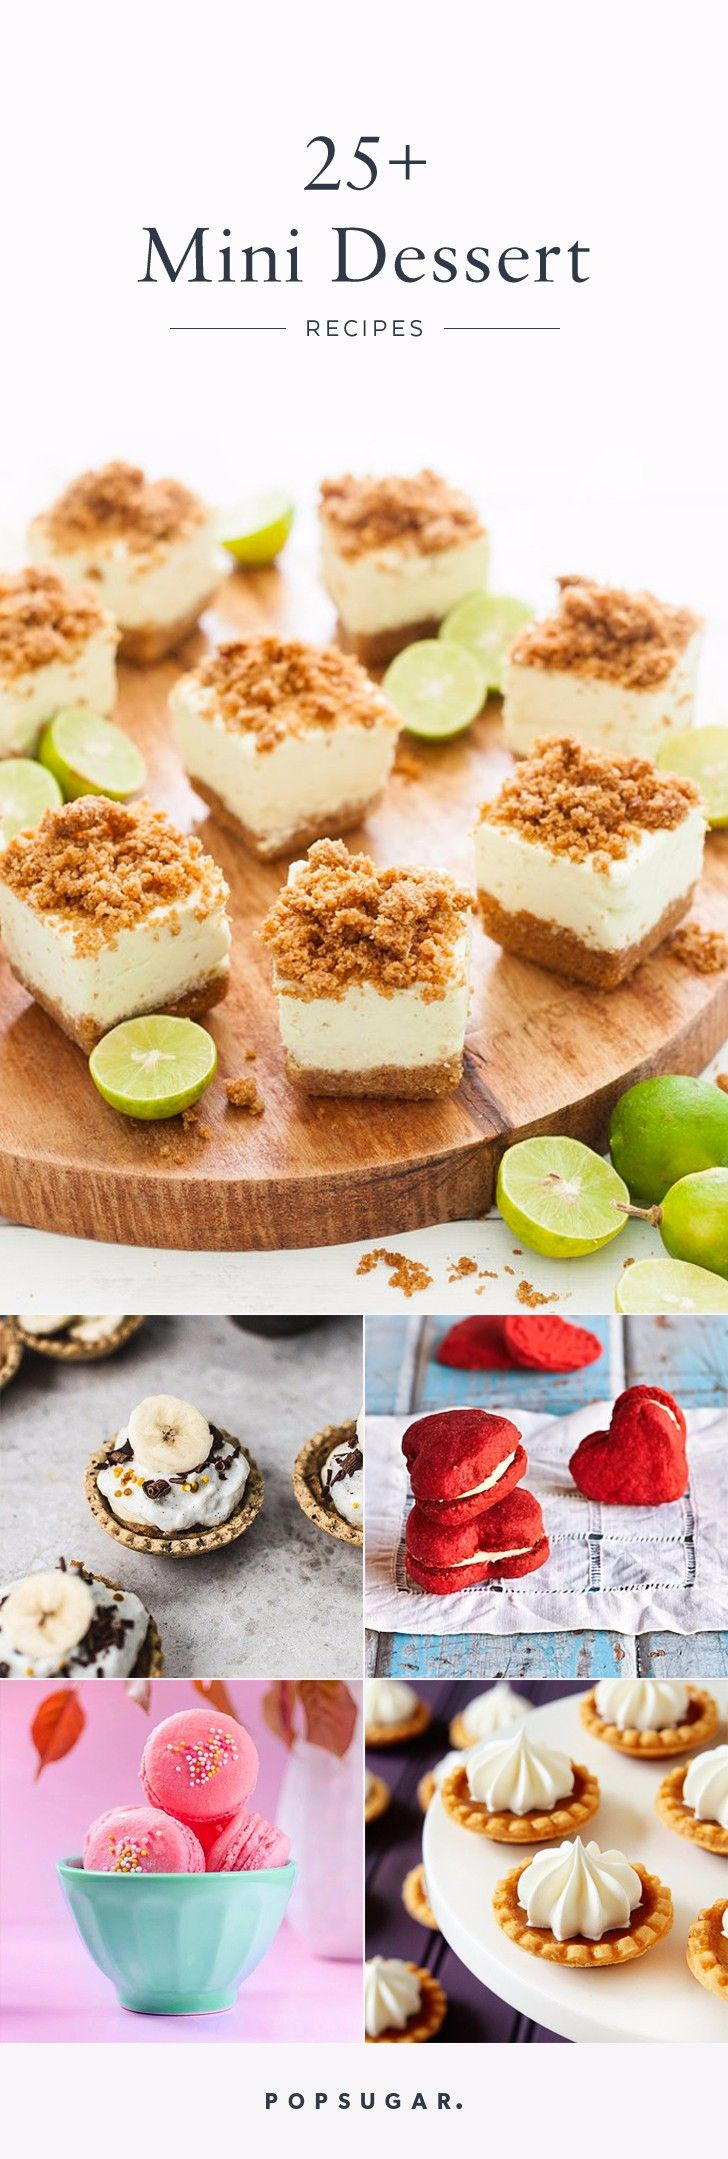 Mini Dessert Recipes For Parties
 De 20 bedste idéer inden for Mini desserter på Pinterest